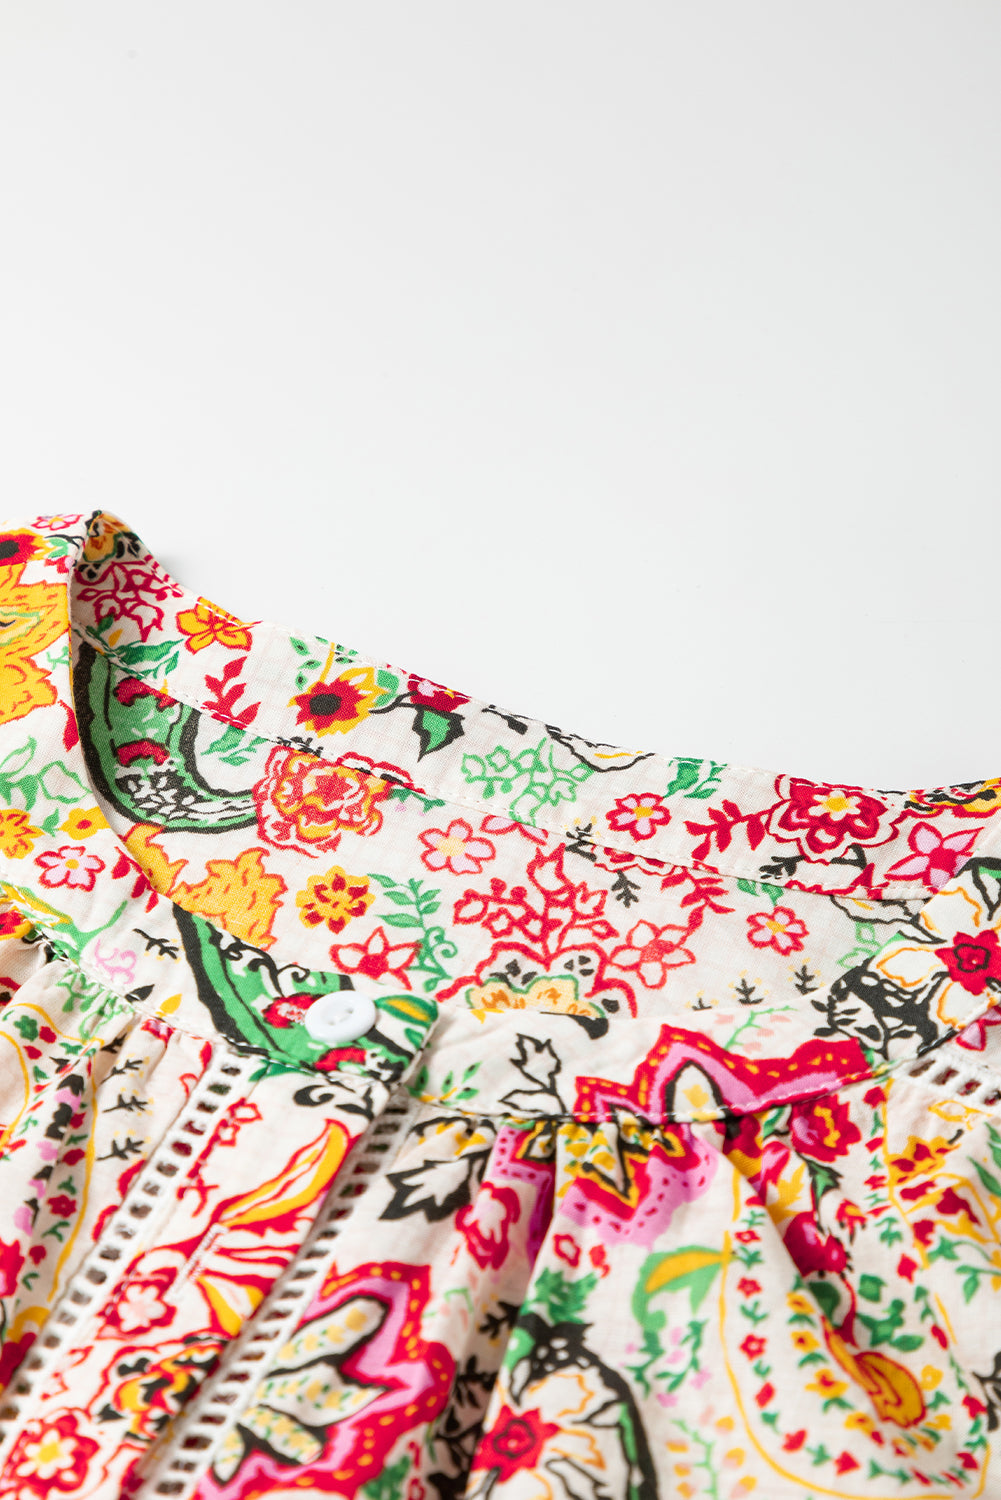 Chemise à manches bouffantes boutonnée en dentelle à imprimé floral multicolore